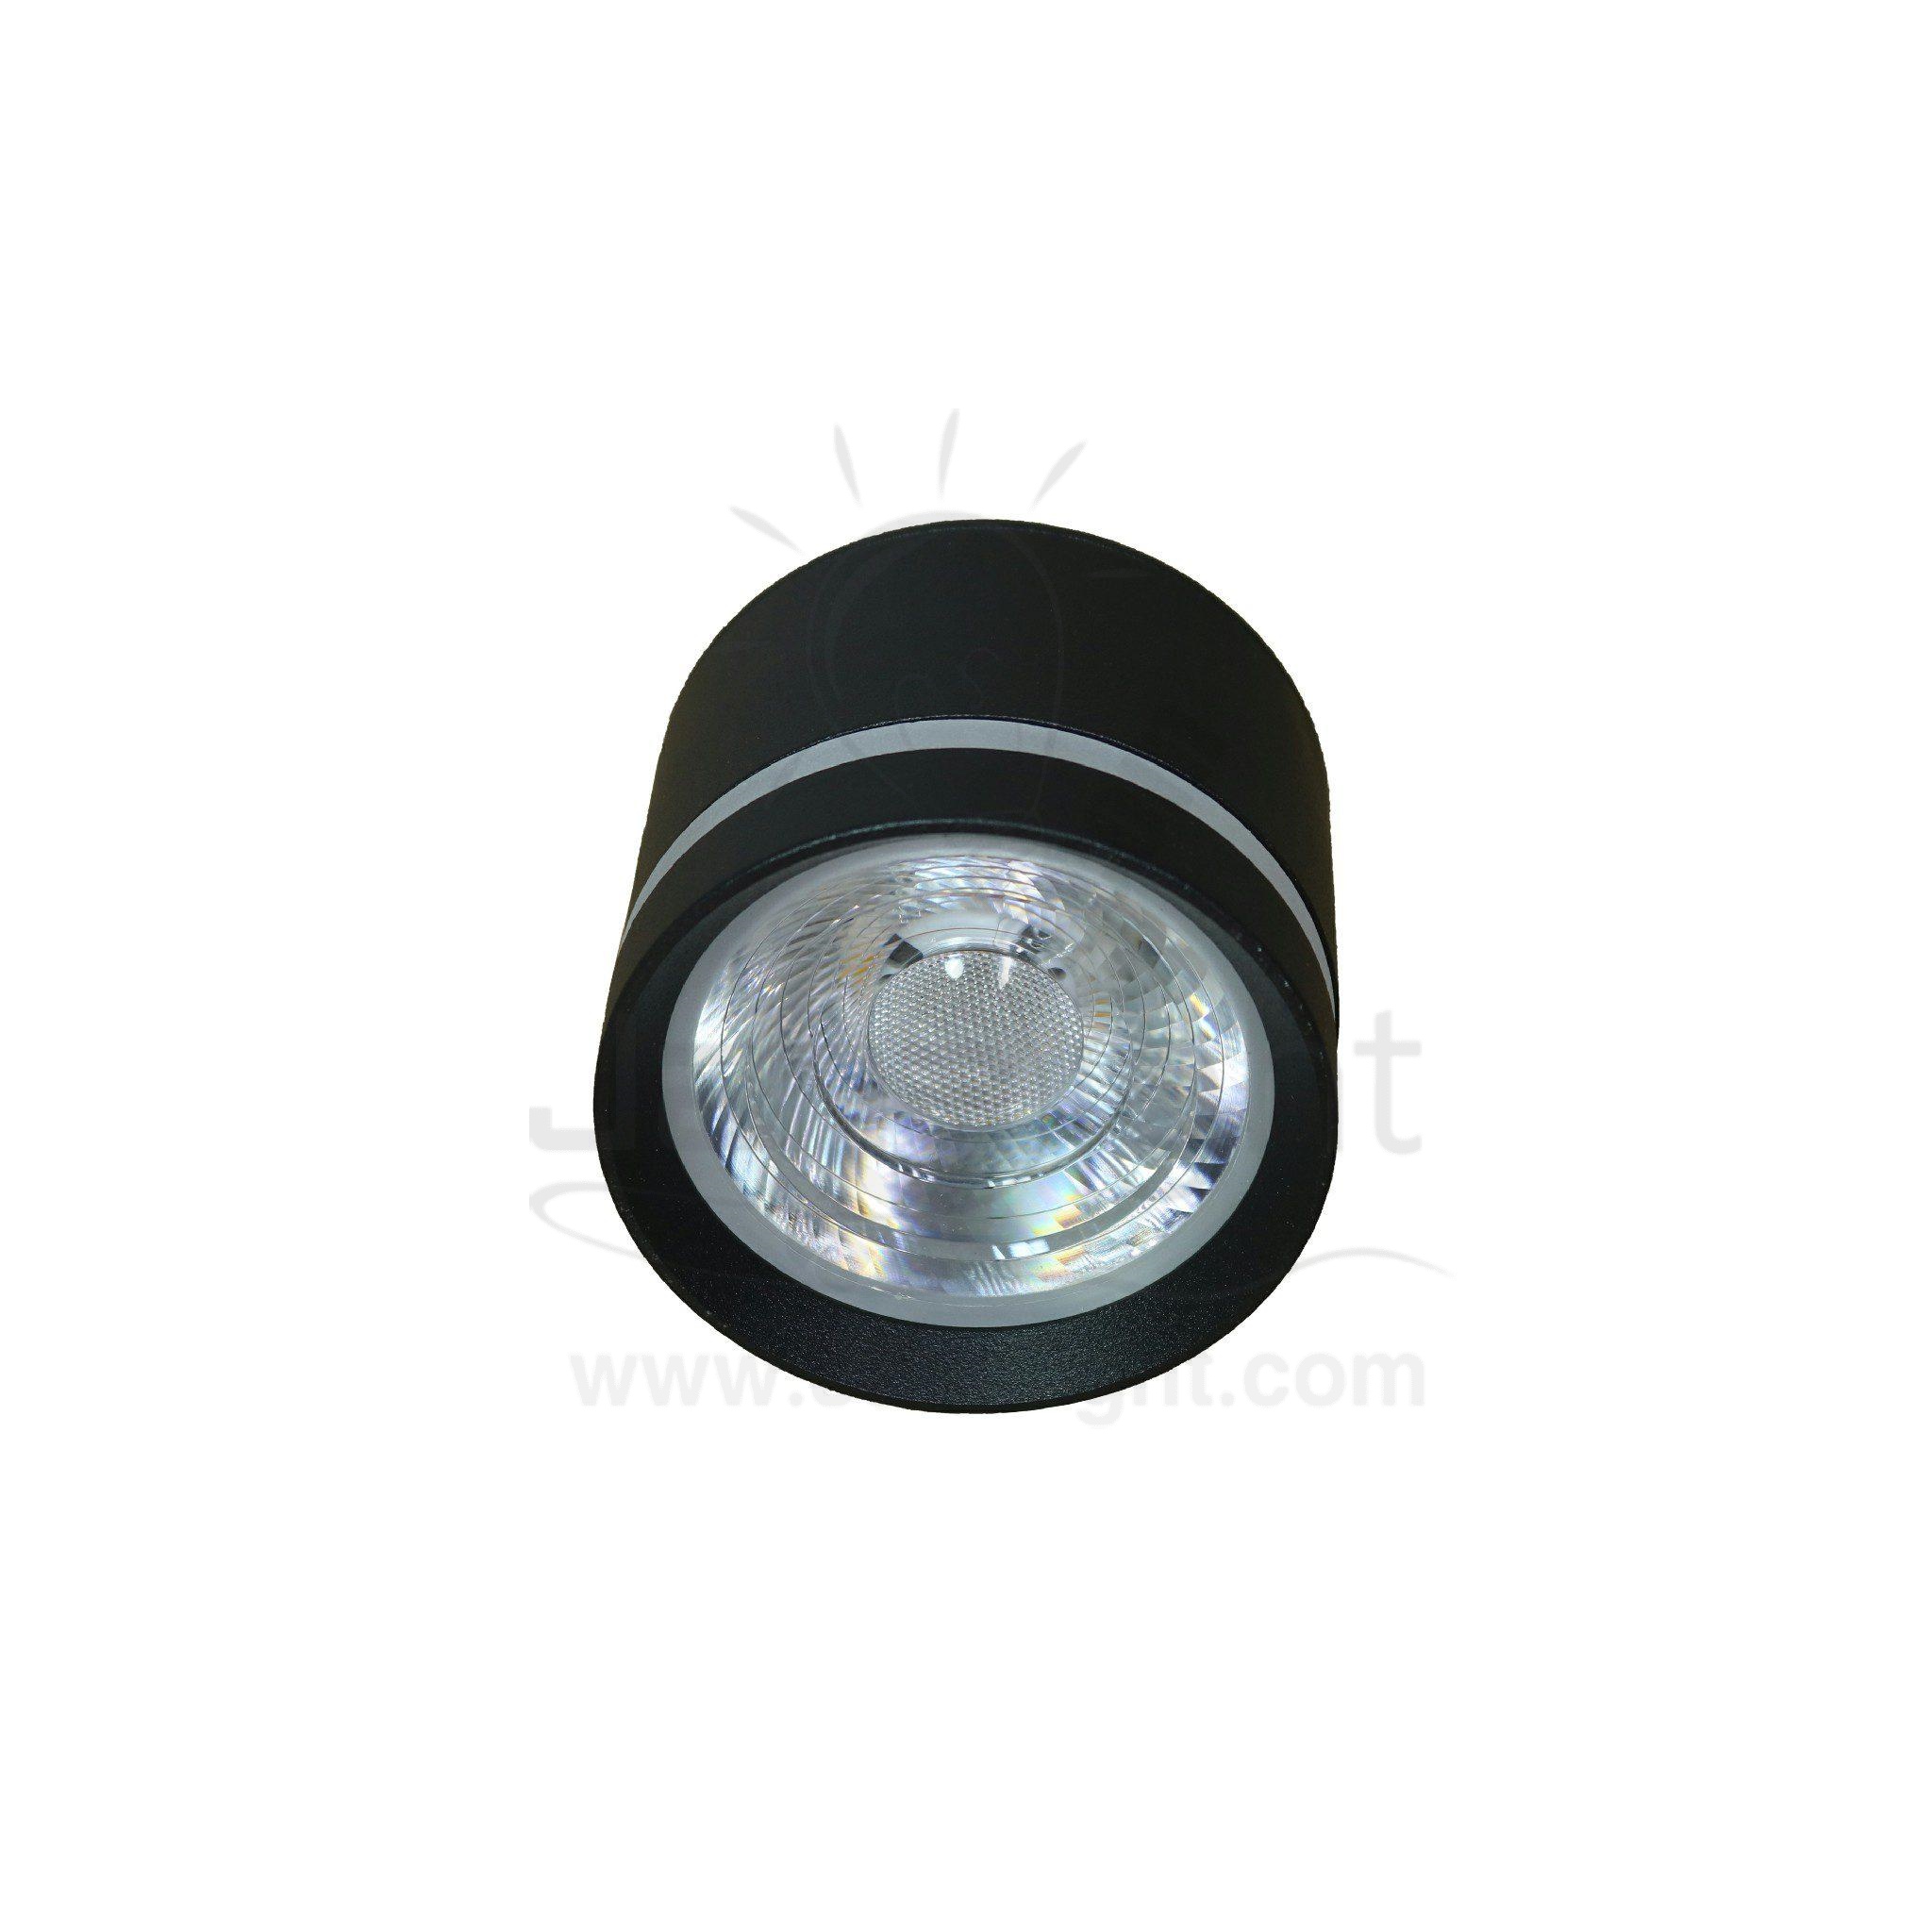 سبوت لايت سلندر 10وات اسود وورم طرف اكرليك قصير cylinder spotlight 10 watt black warm short acrylic ring light 563